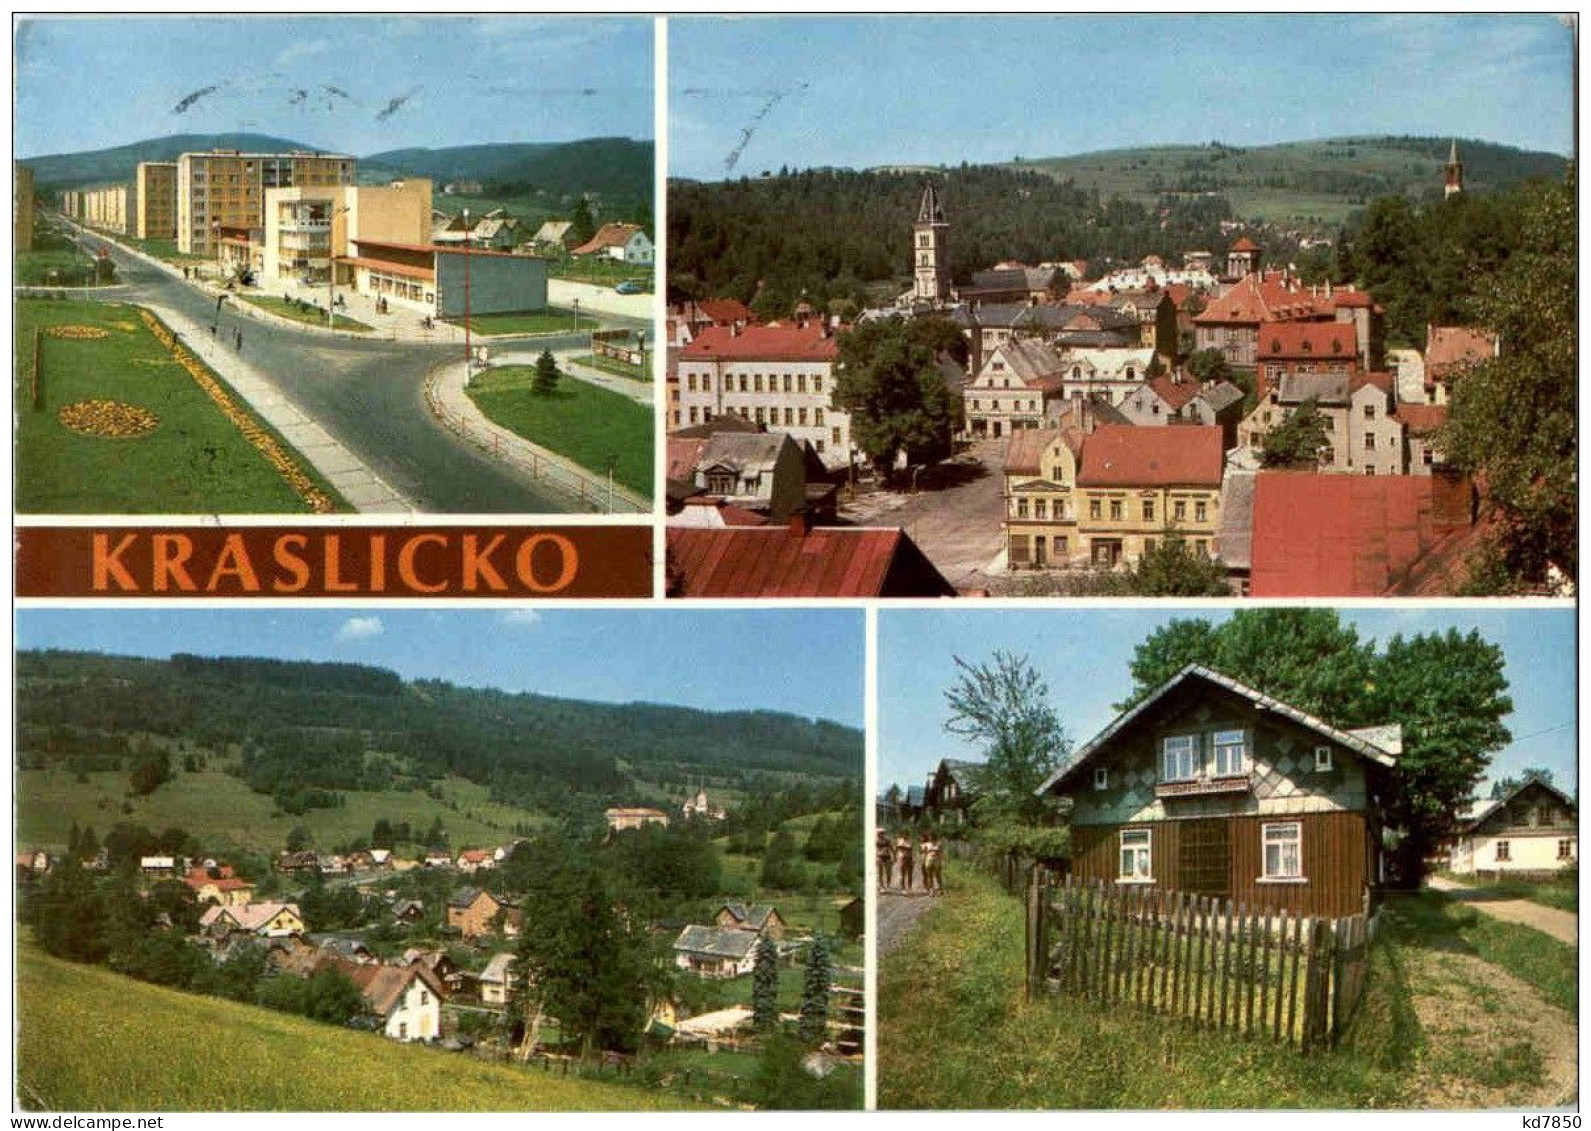 Kraslicko - Tsjechië